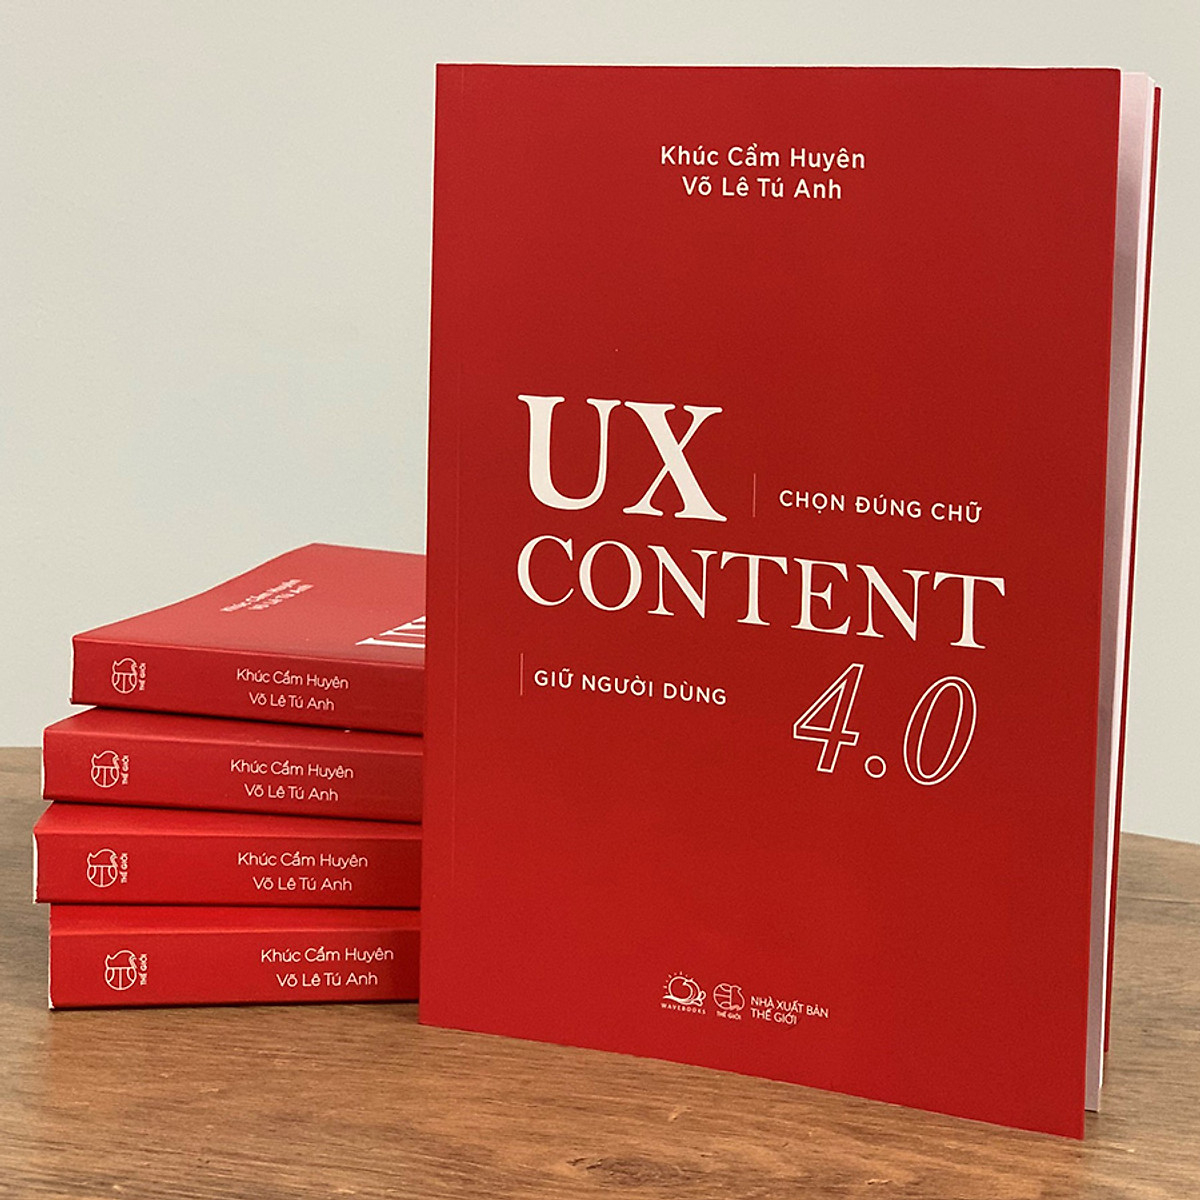 UX CONTENT 4.0 - Chọn Đúng Chữ, Giữ Người Dùng PDF